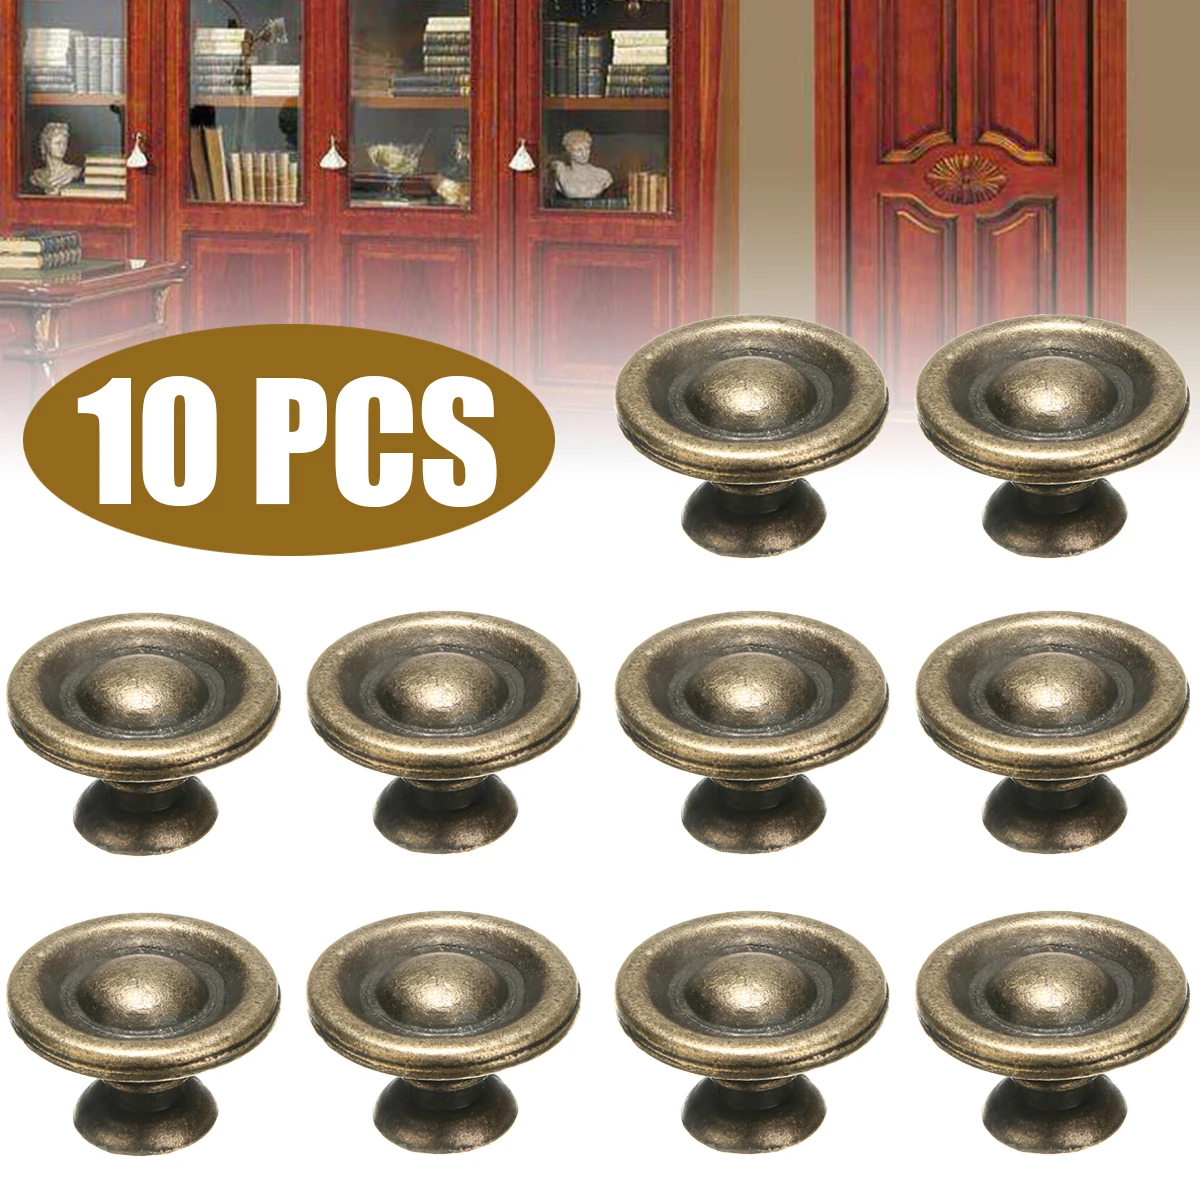 10pcs Antique Brass Furniture Knobs Handles Kitchen Bedroom Doors